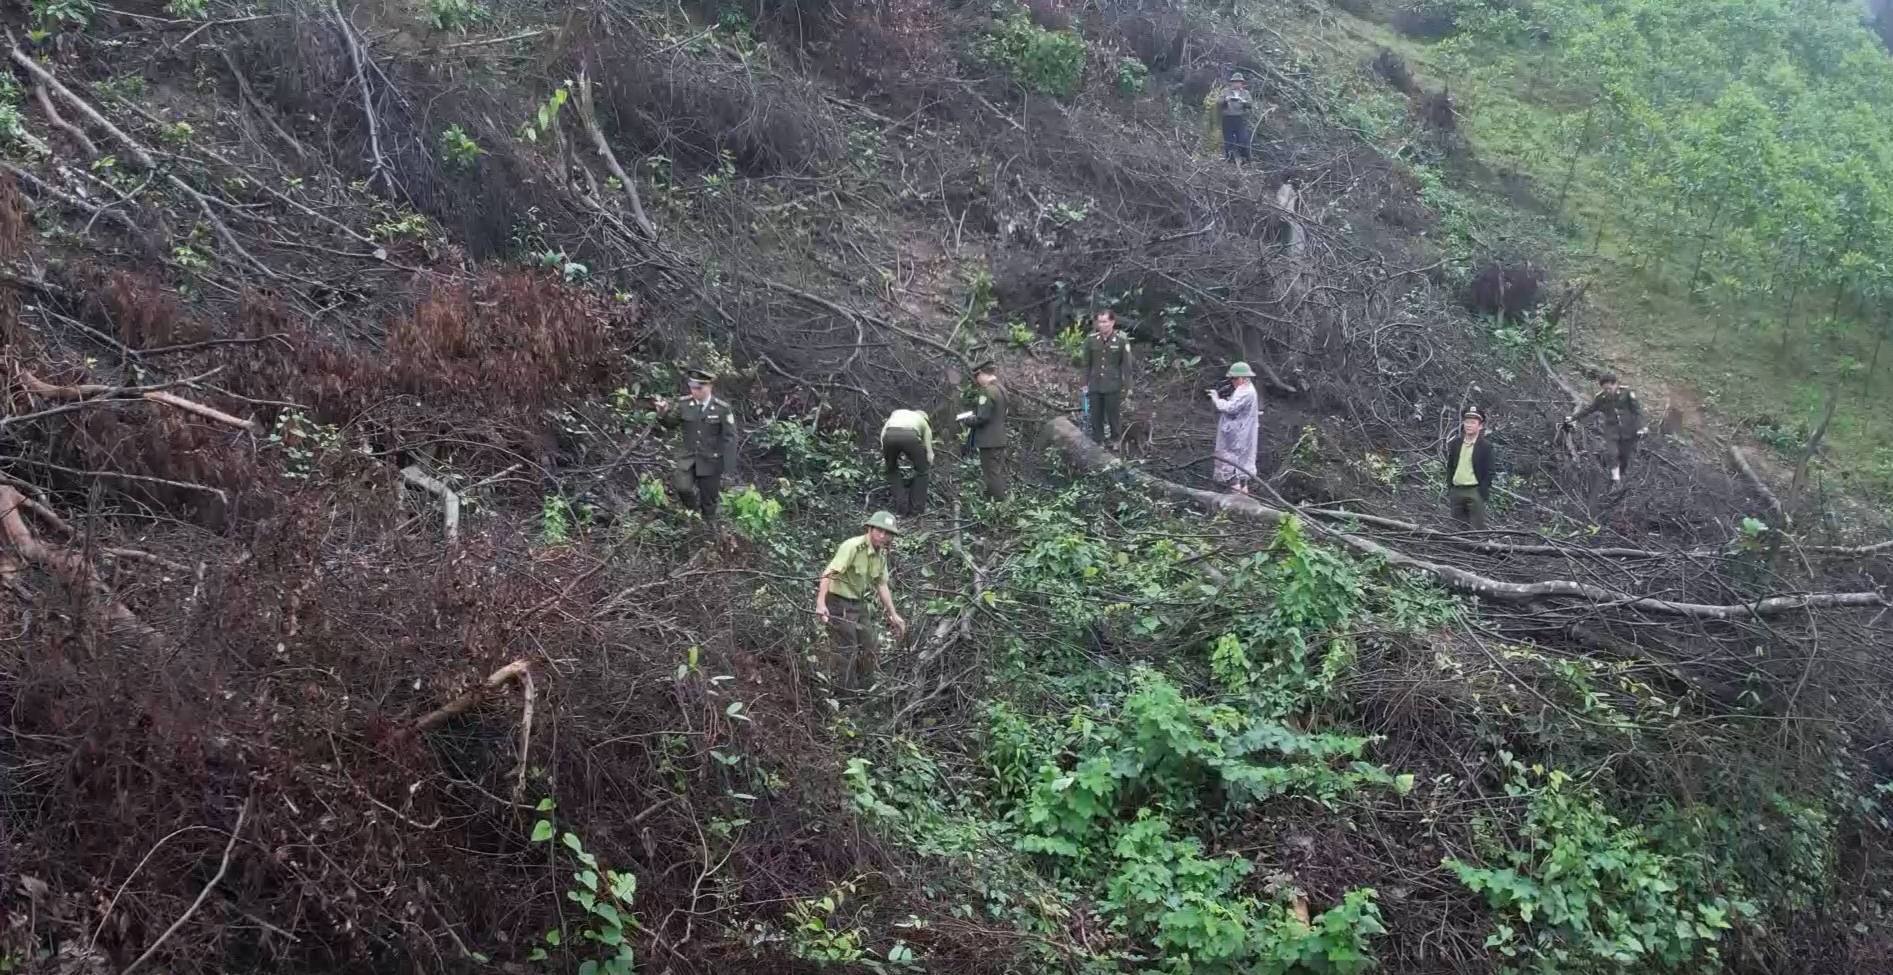 Sẽ kiểm điểm trách nhiệm kiểm lâm sau vụ phá rừng ở Quảng Bình - Ảnh 1.